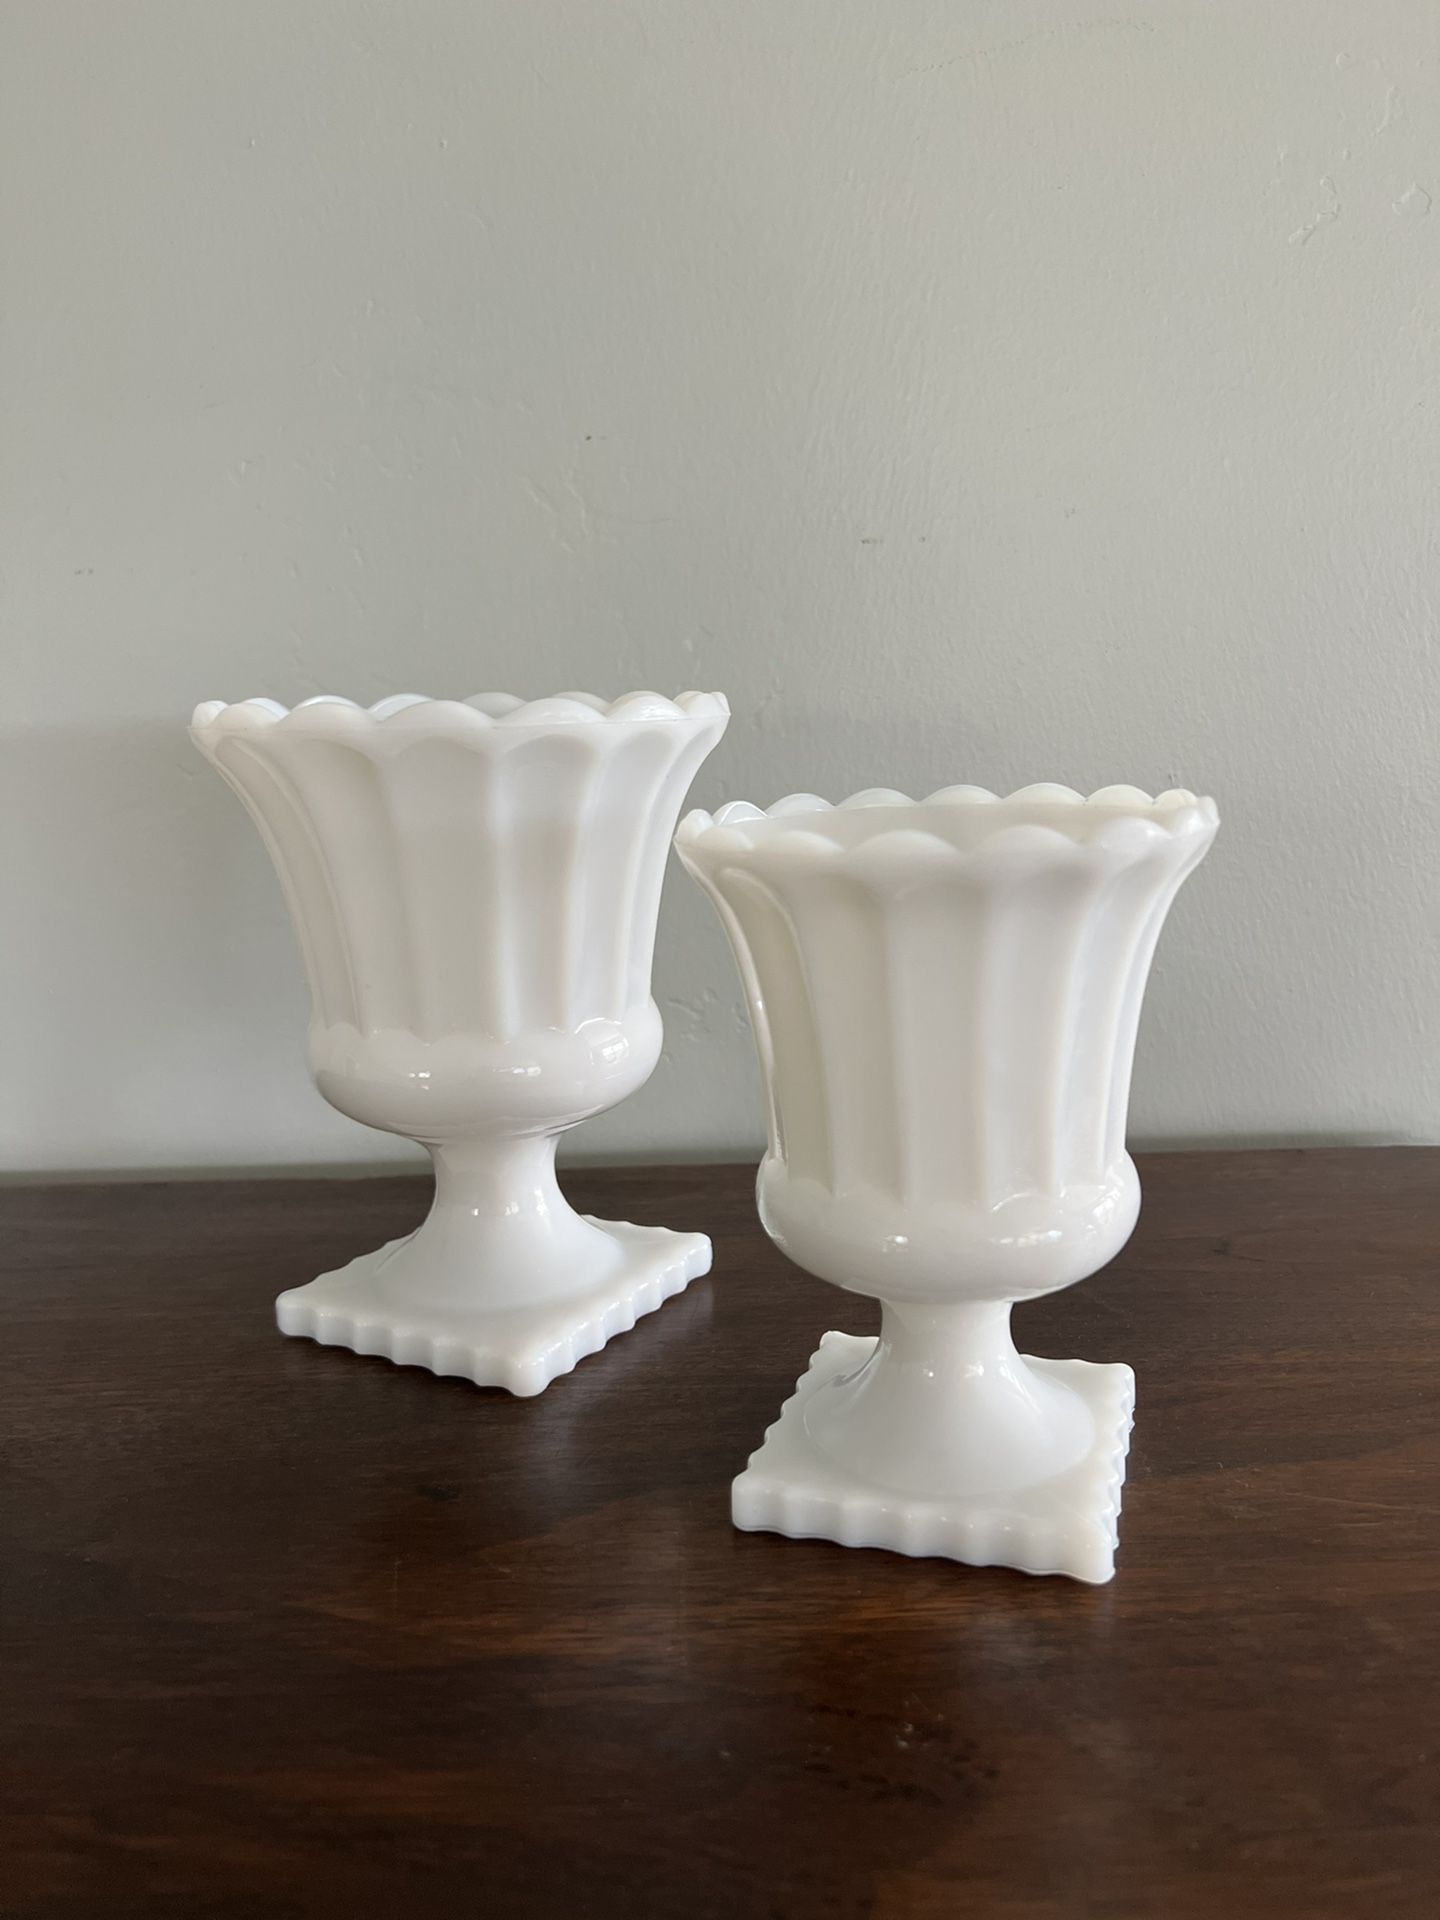  Fluted Milk Glass Pedestal - Urn Vases Planters Wedding Candle Holder 